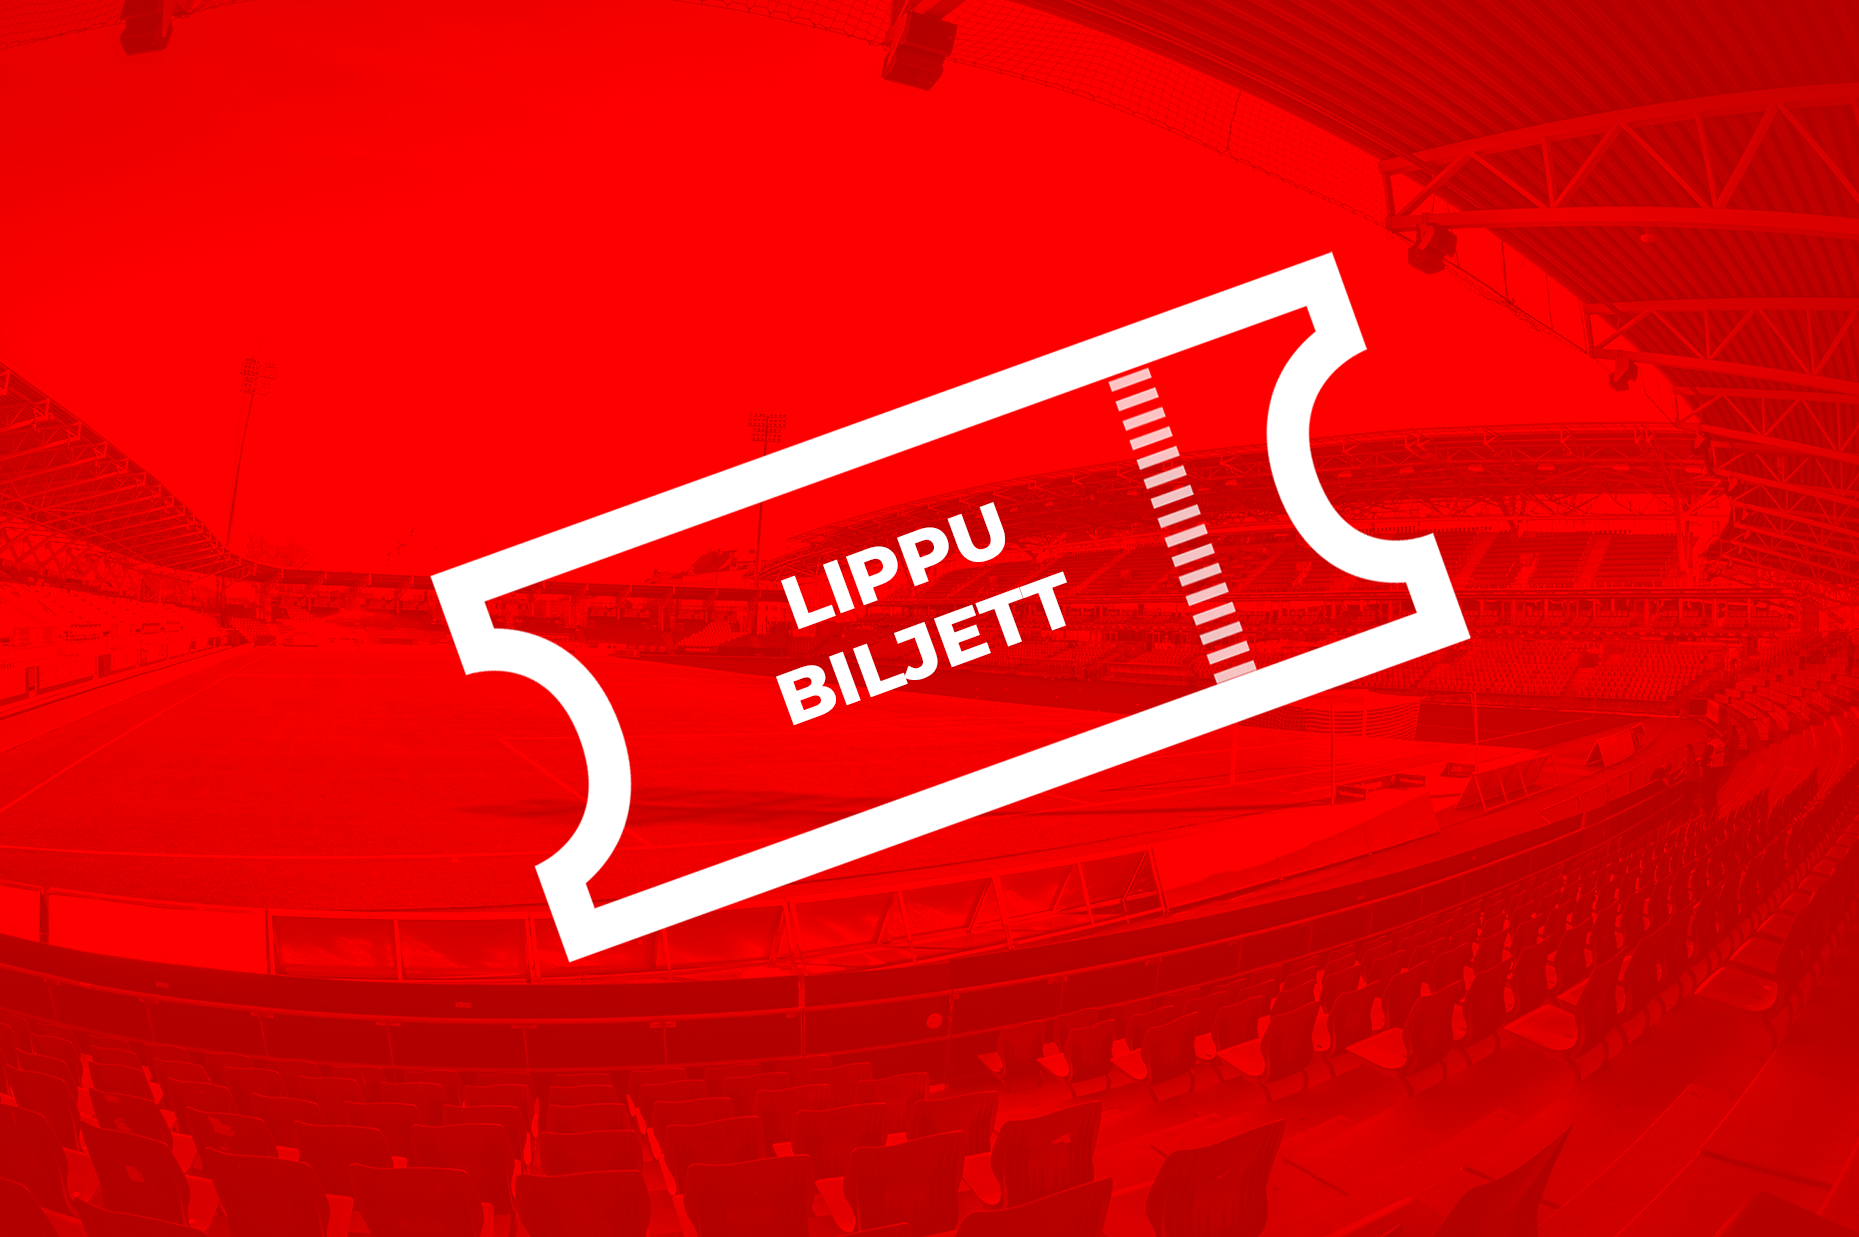 Biljettförsäljningen till HIFK:s hemmamatcher inleds imorgon